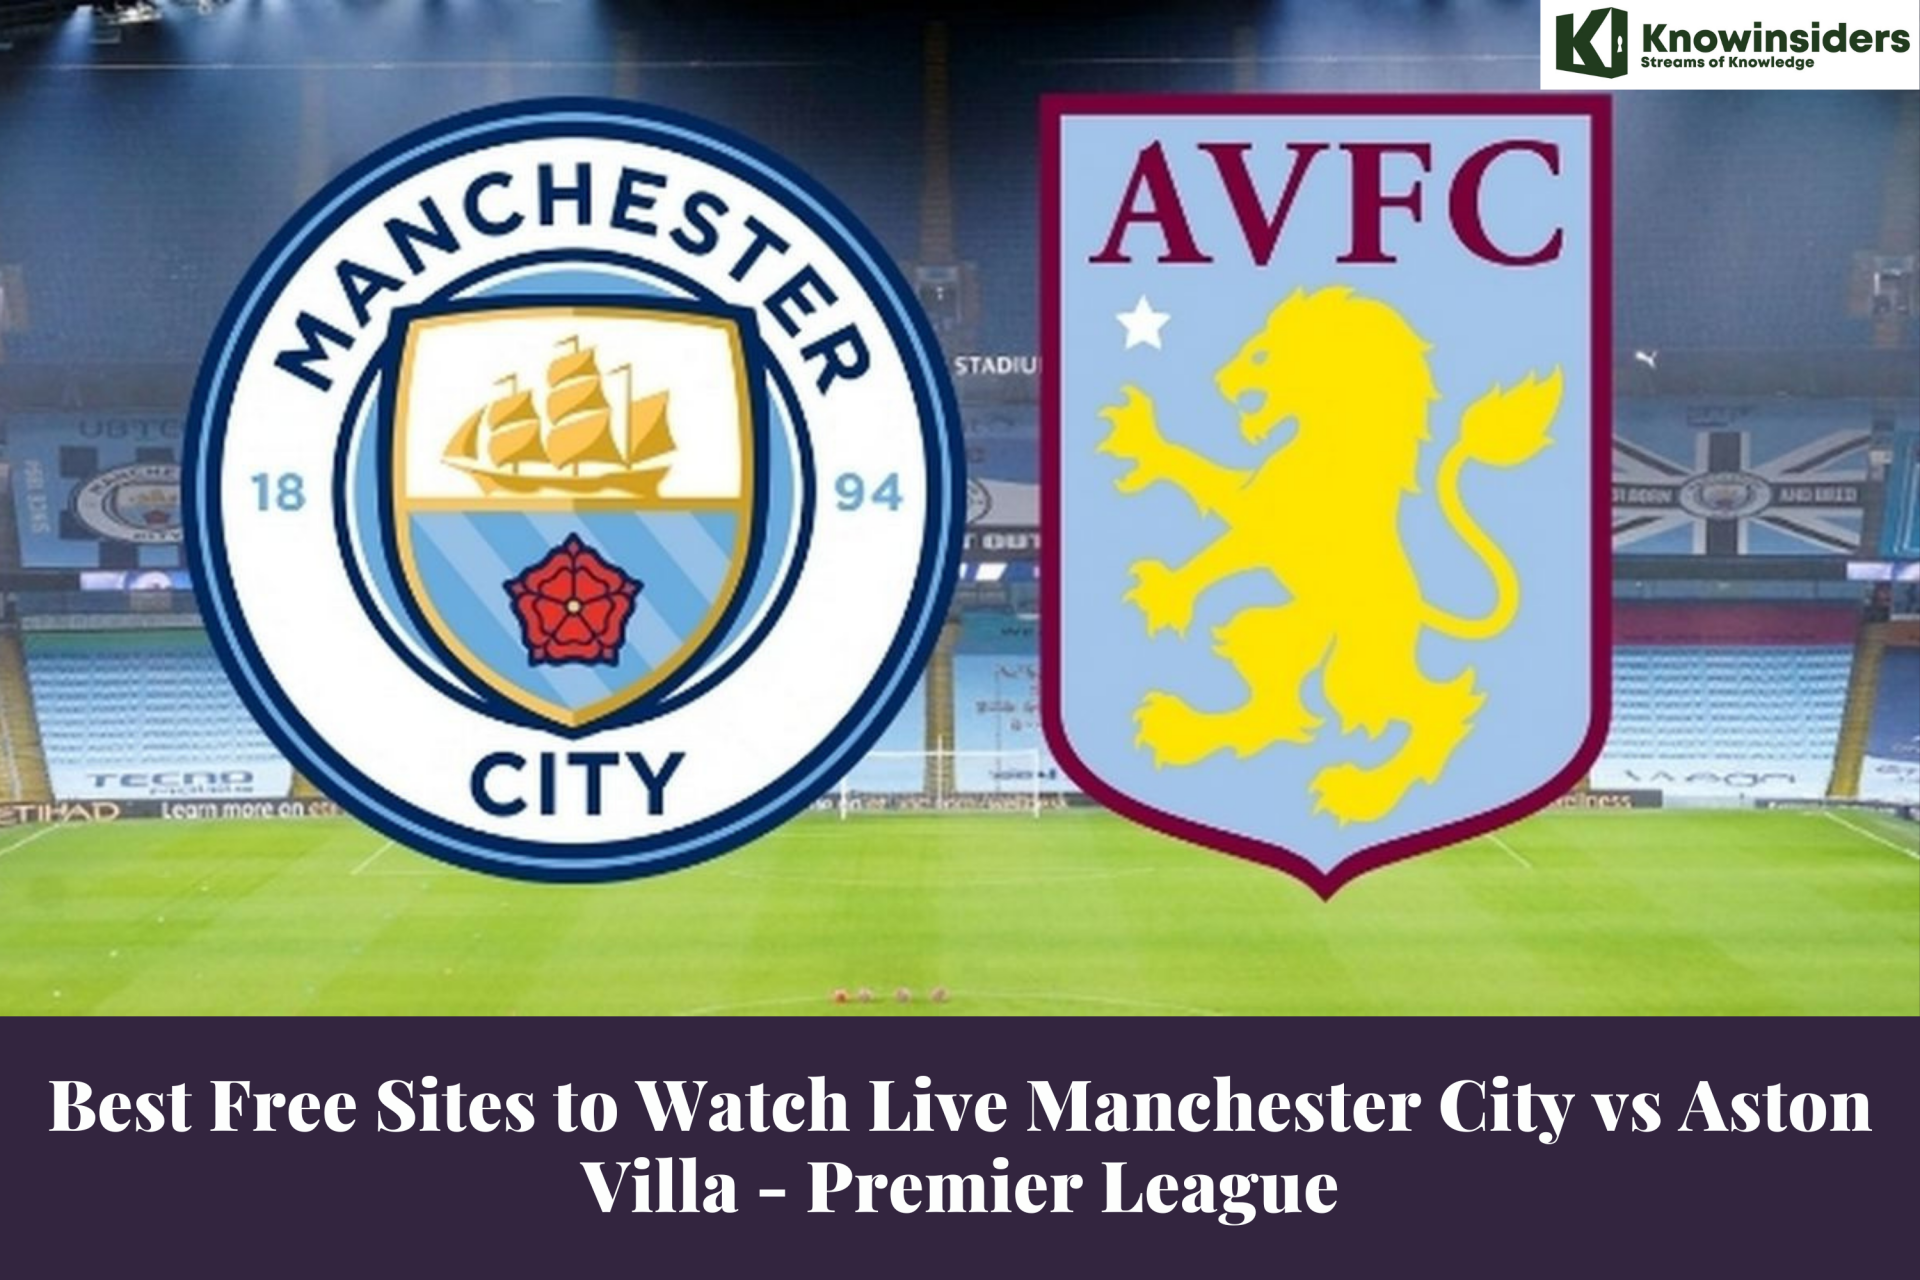 Best Free Sites to Watch Live Manchester City vs Aston Villa - Premier League